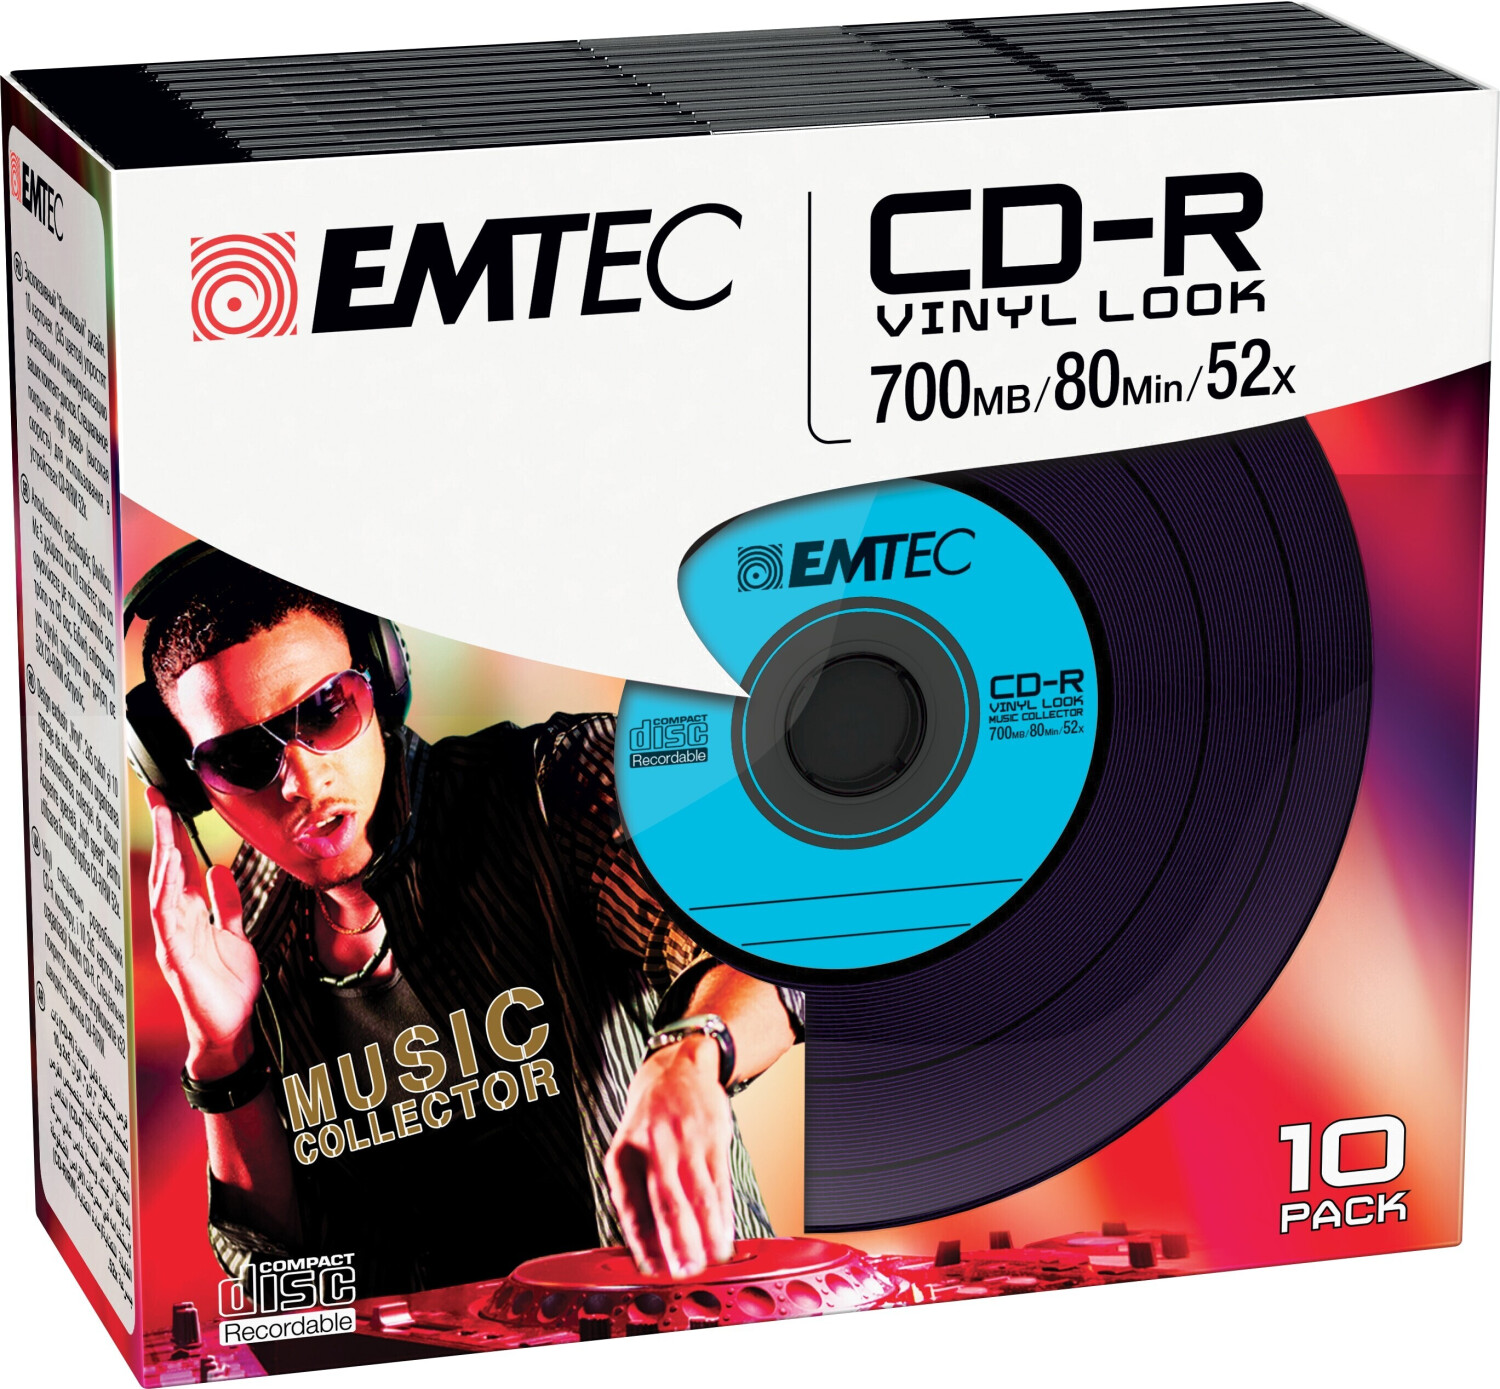 CD-R 80 Min/700 MB MediaRange 52x Data Vinyl in Cakebox 50-pack